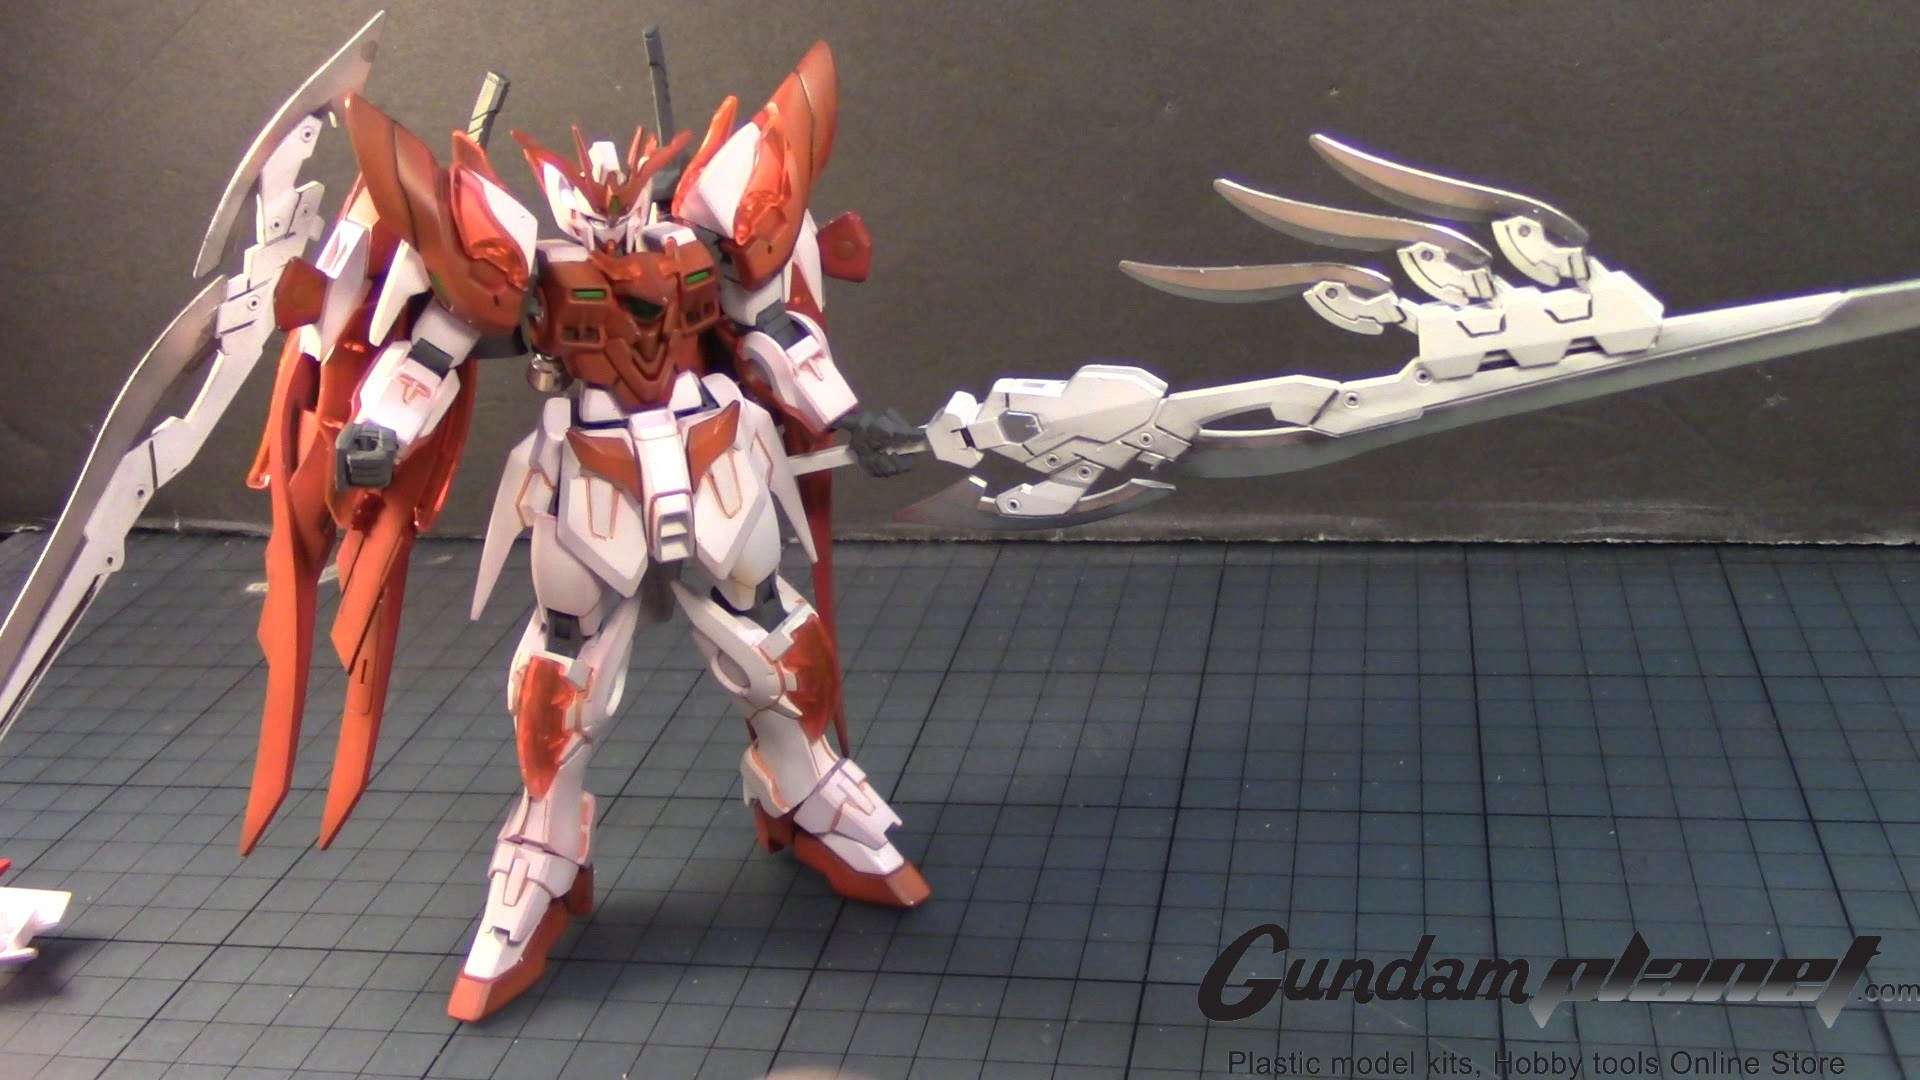 1920x1080 *GundamCustoms* 1/144 HG Wing Gundam Zero Honoo Custom - Part 7 - YouTube